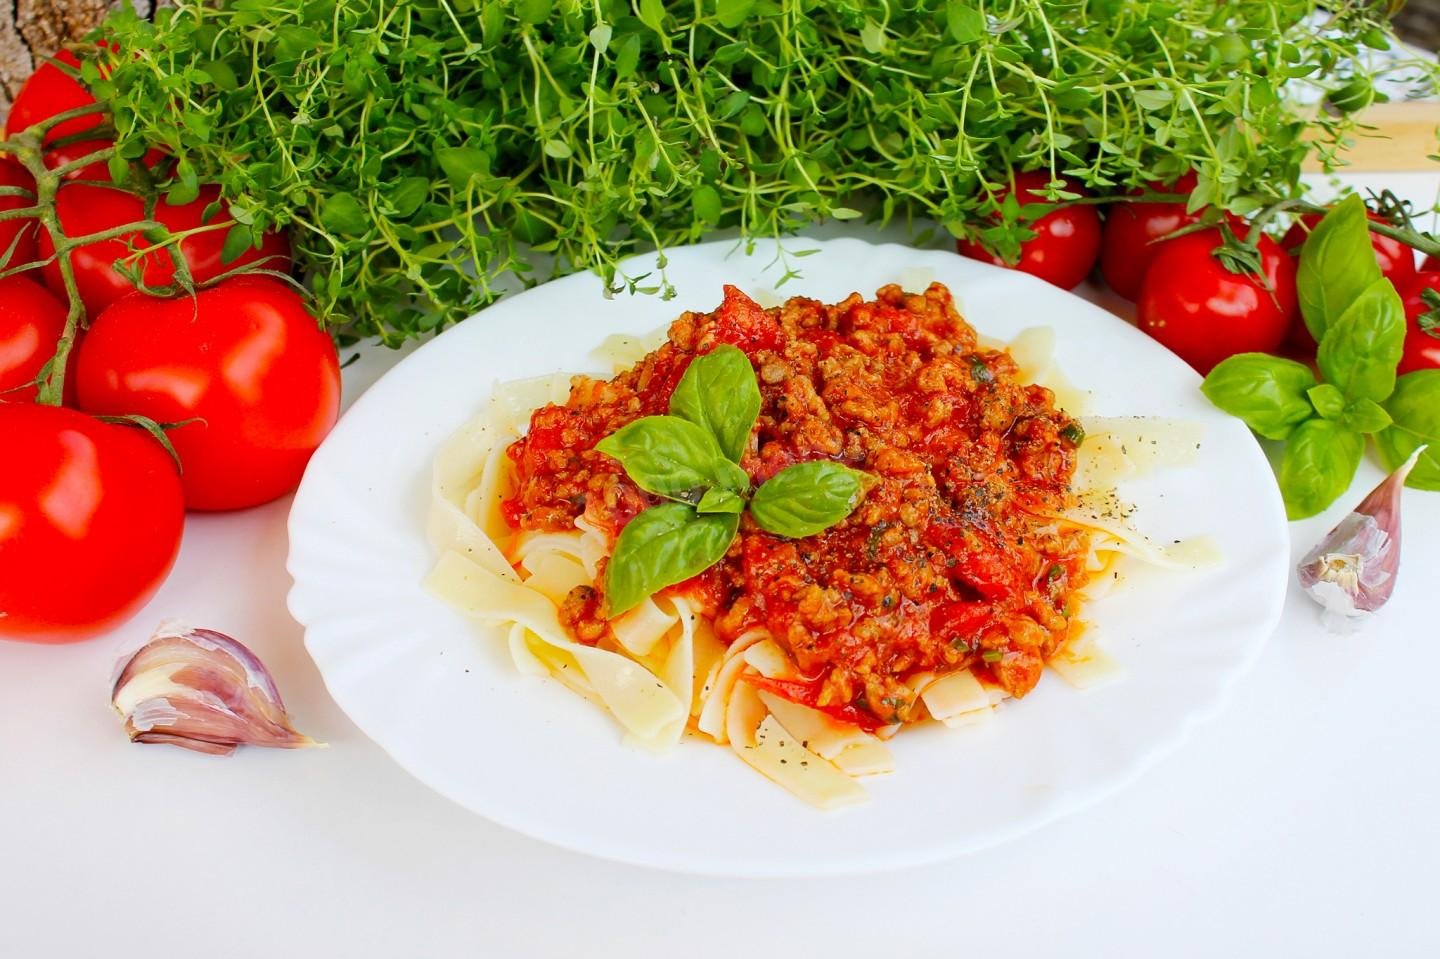 Спагетти болоньезе томатная паста. Томатная паста болоньезе. Томатные макароны. Салат болоньезе. Летний салат болоньезе.